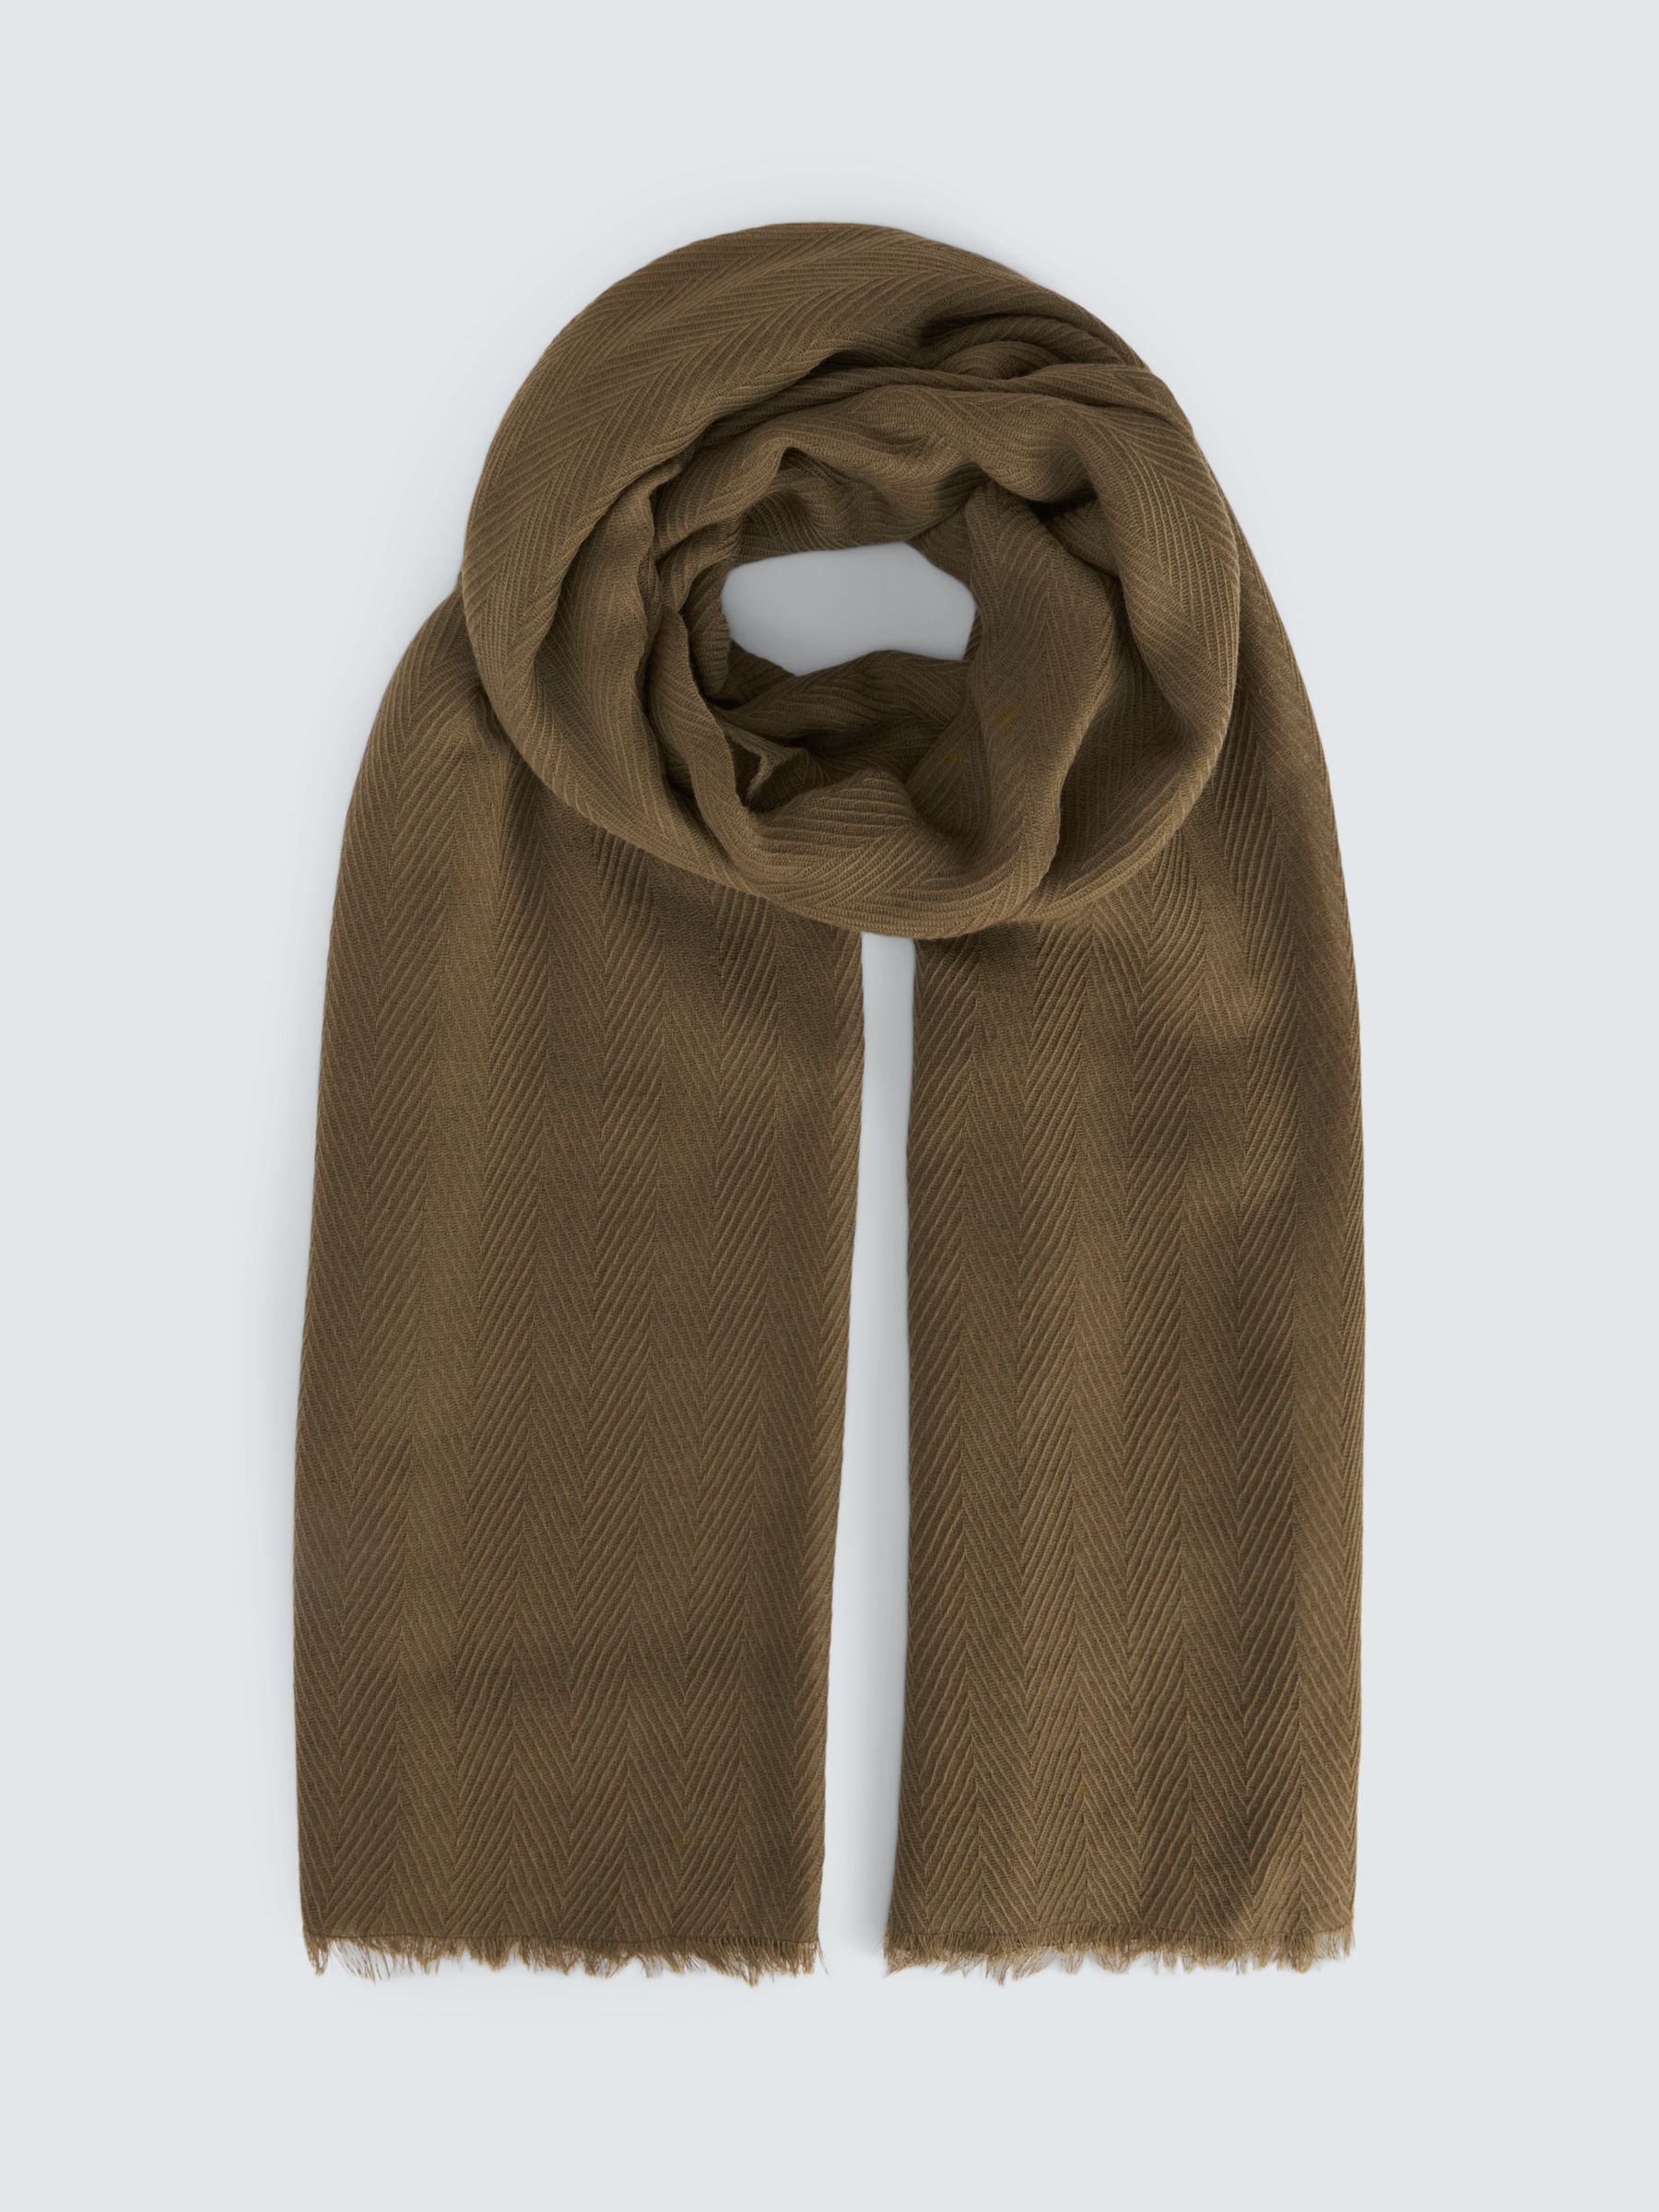 Шерстяной шарф с узором елочка John Lewis, айви грин